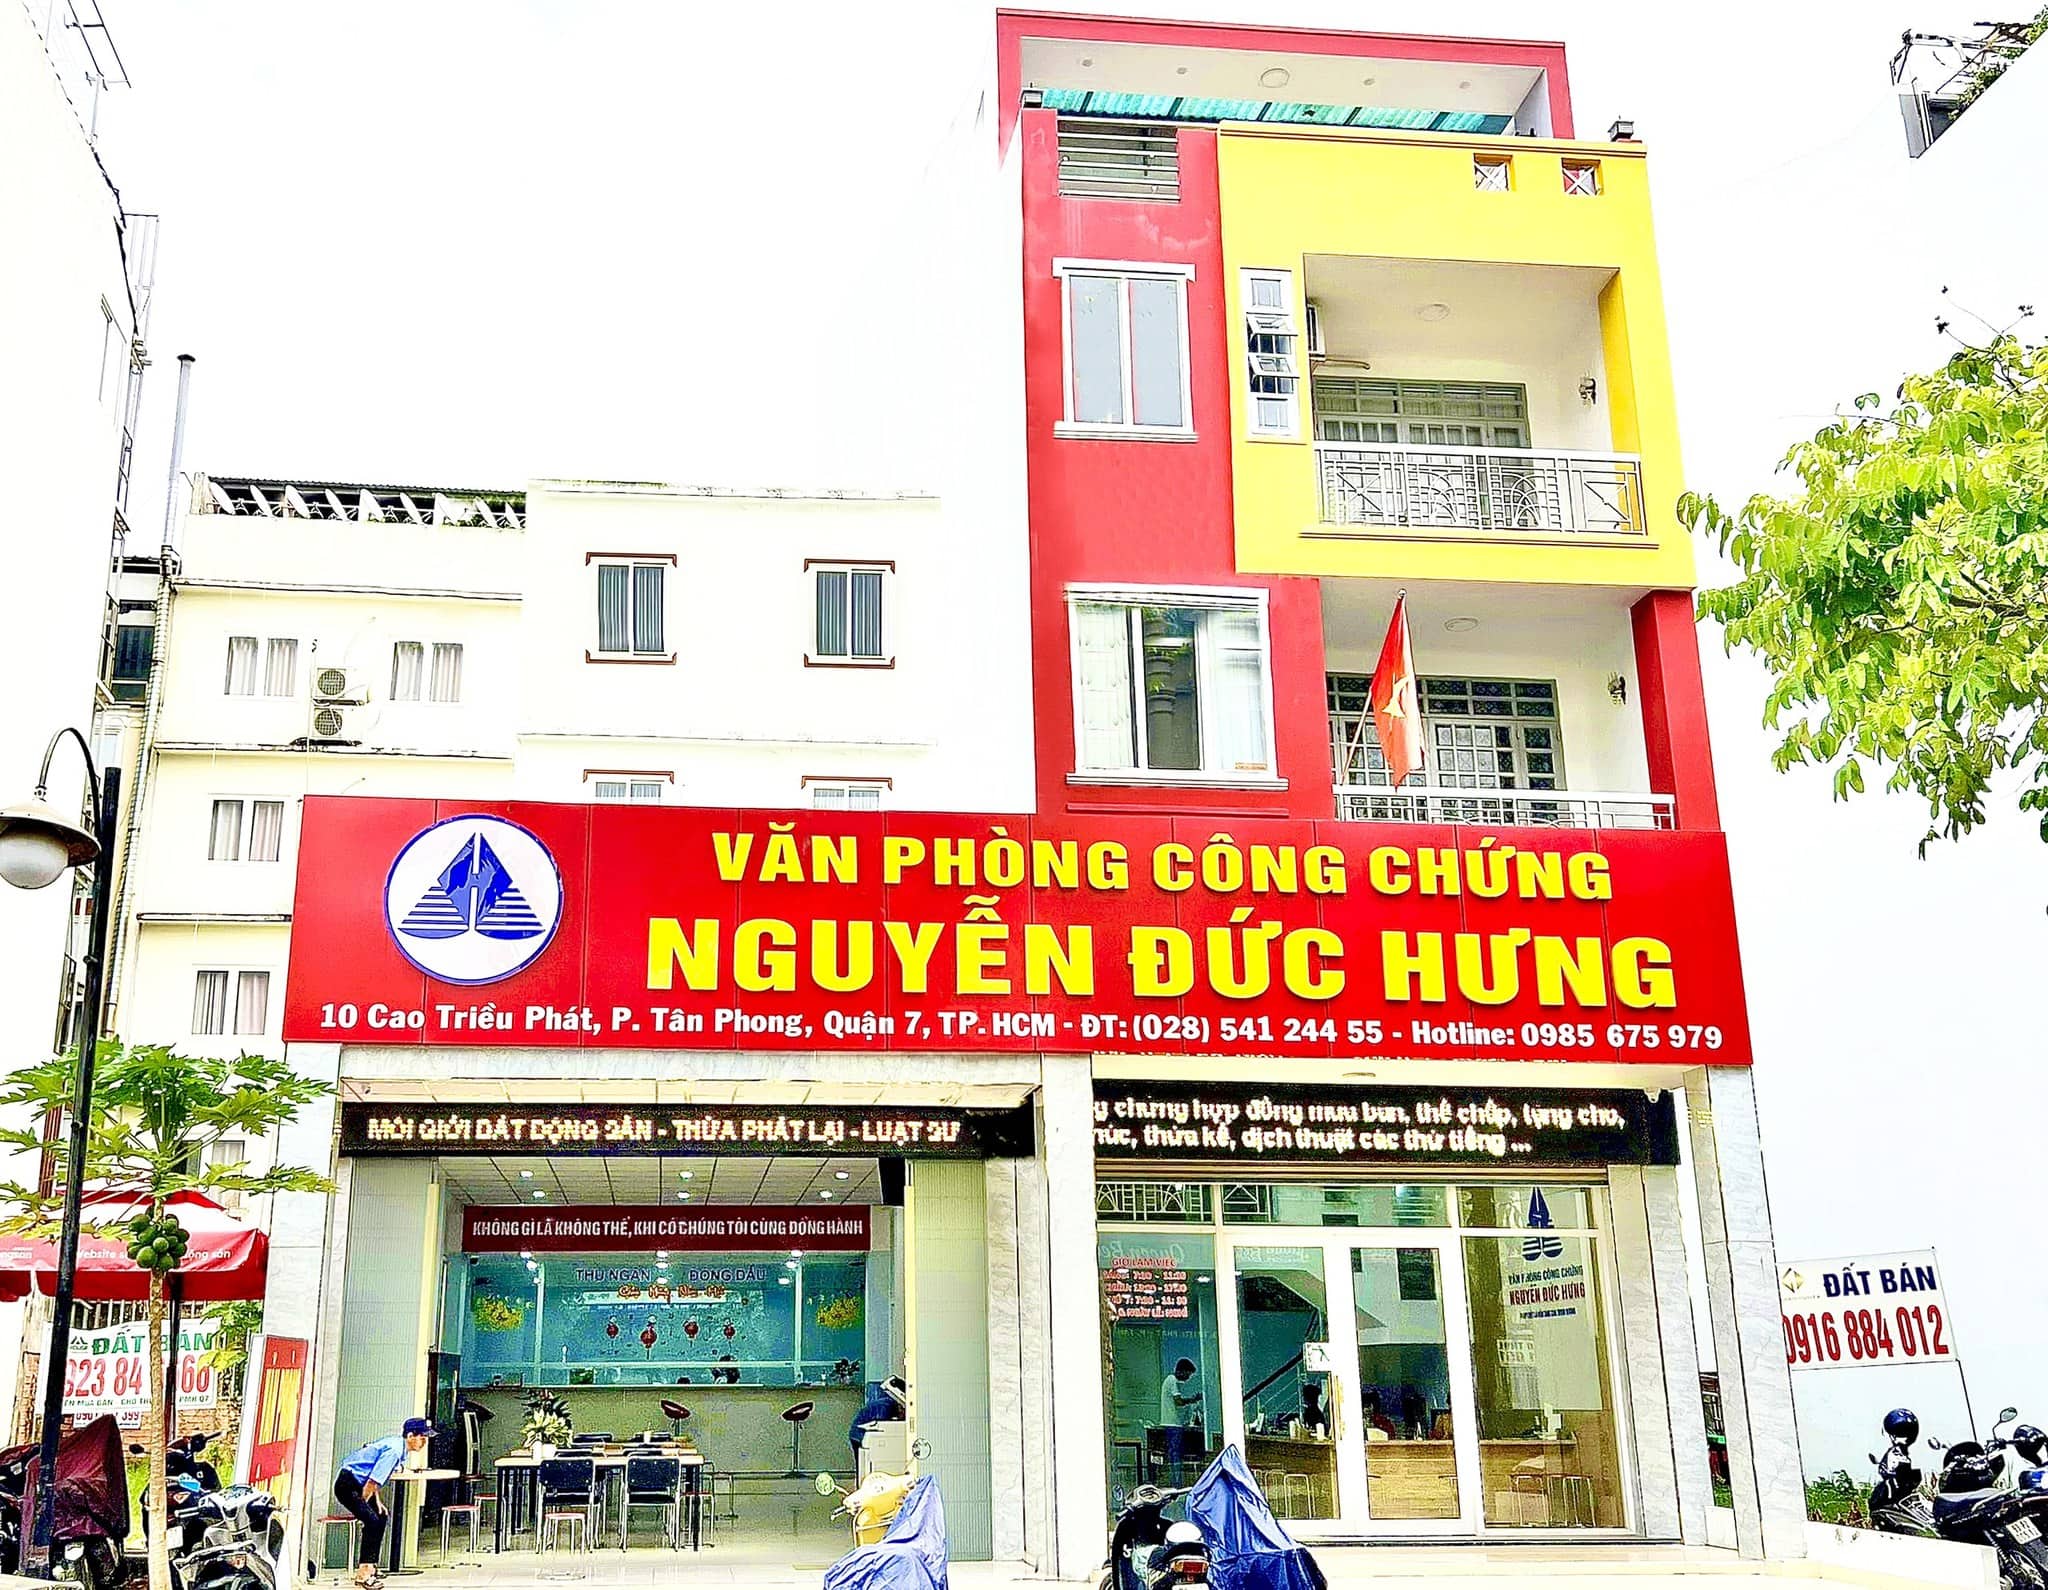 van phong cong chung nguyen duc hung phumyhungreals.com